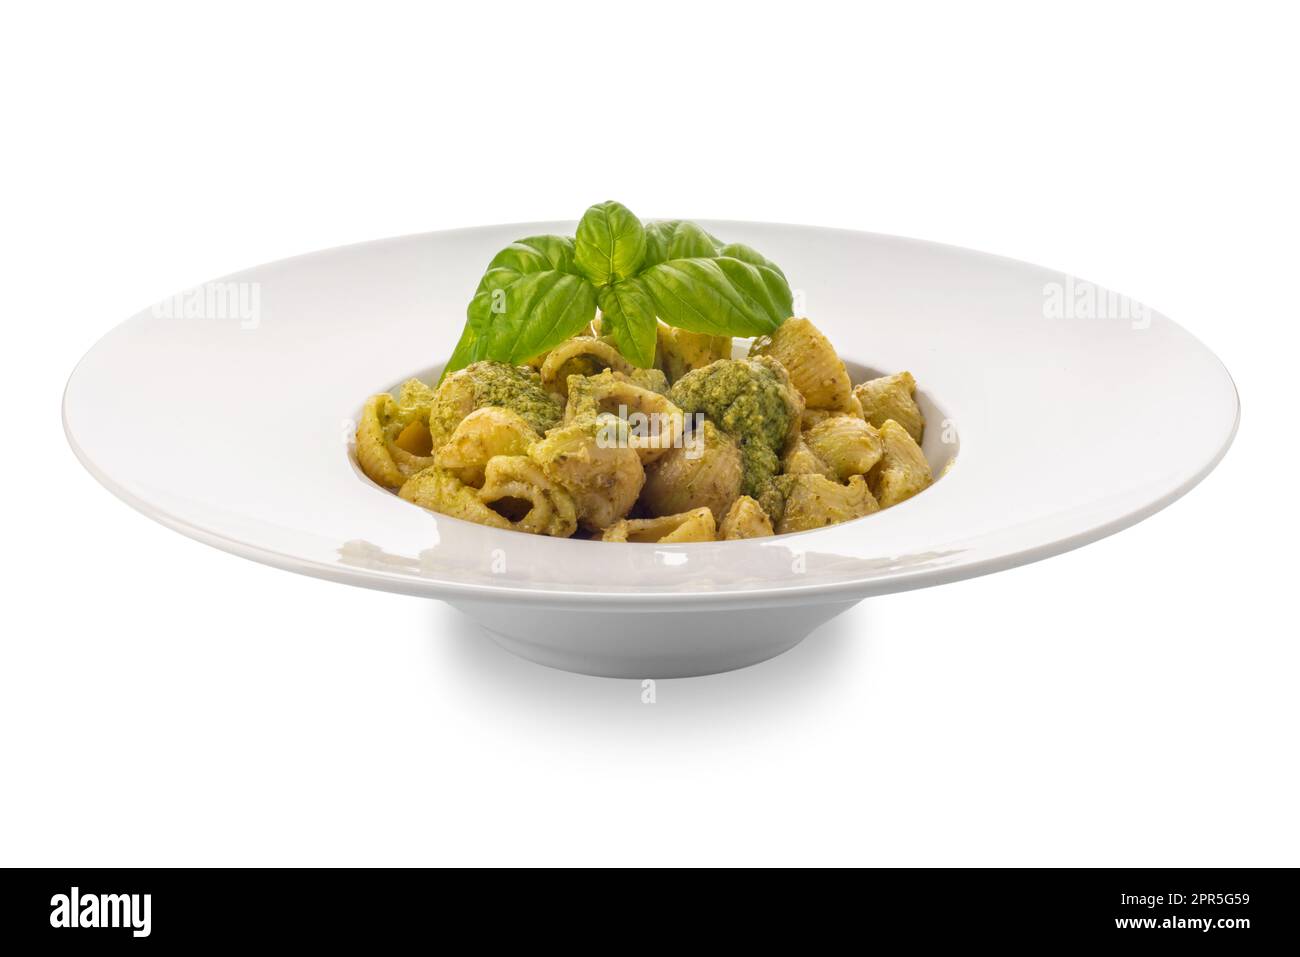 Pâtes macaroni au pesto dans un plat blanc aux feuilles de basilic, le pesto est une sauce génoise typique de basilic, pignons, huile d'olive et parmesan. Isol Banque D'Images